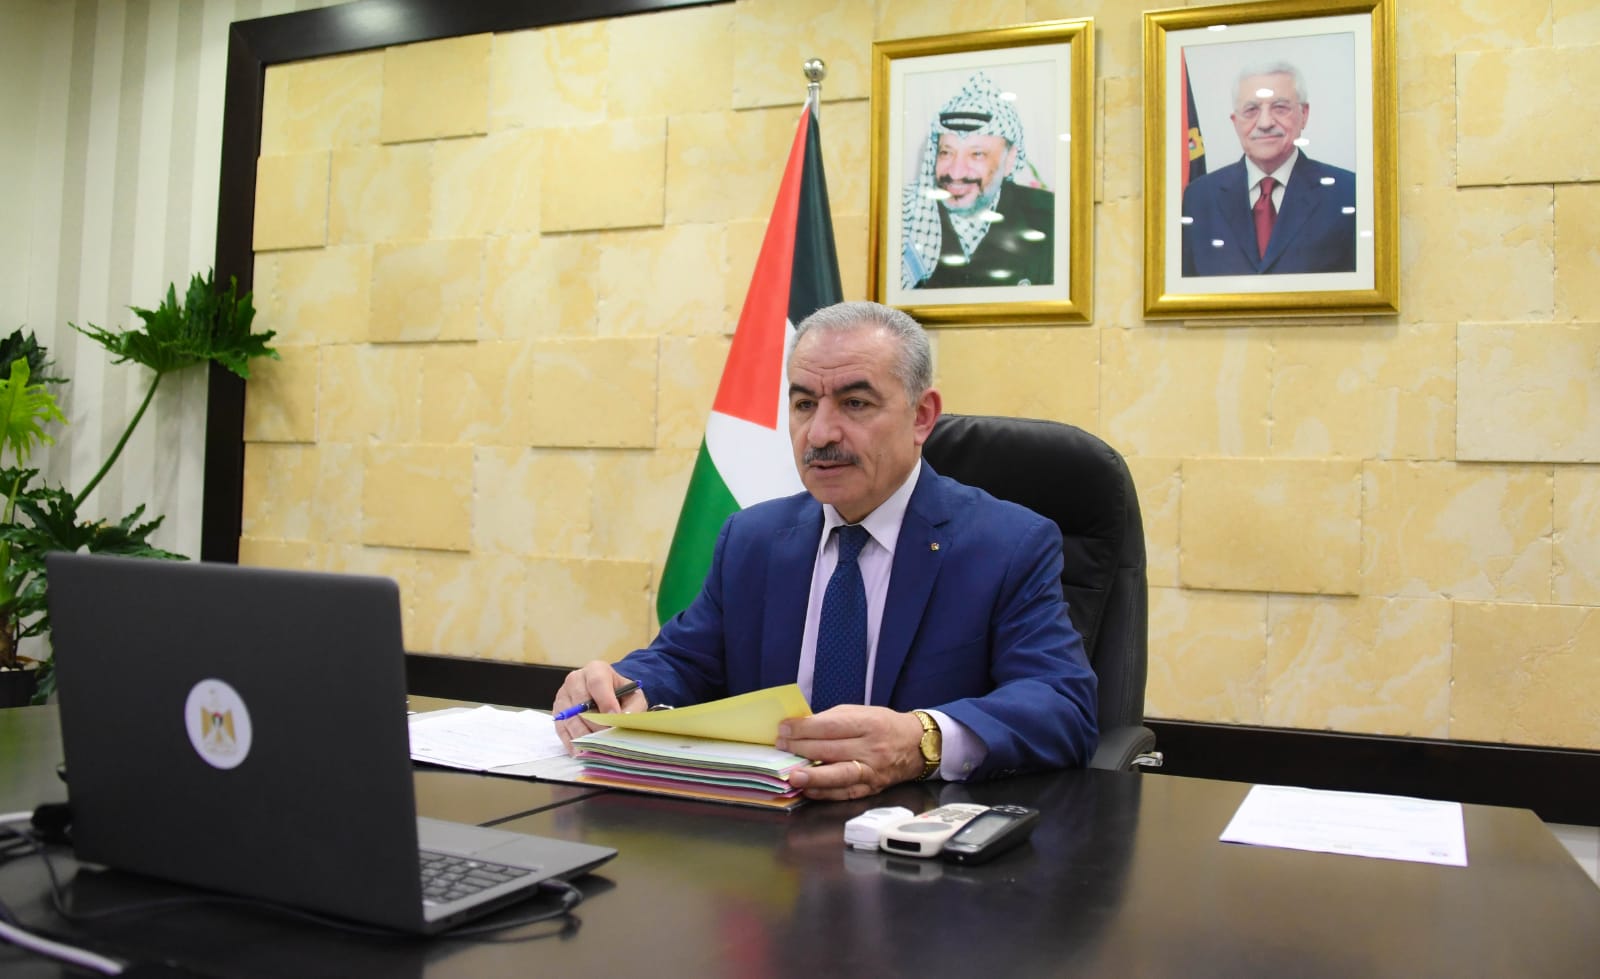 مجلس الوزراء الفلسطيني يوافق على تعيين كادر طبي بشكل طارئ لتلبية احتياجات وزارة الصحة لمواجهة فيروس كورونا